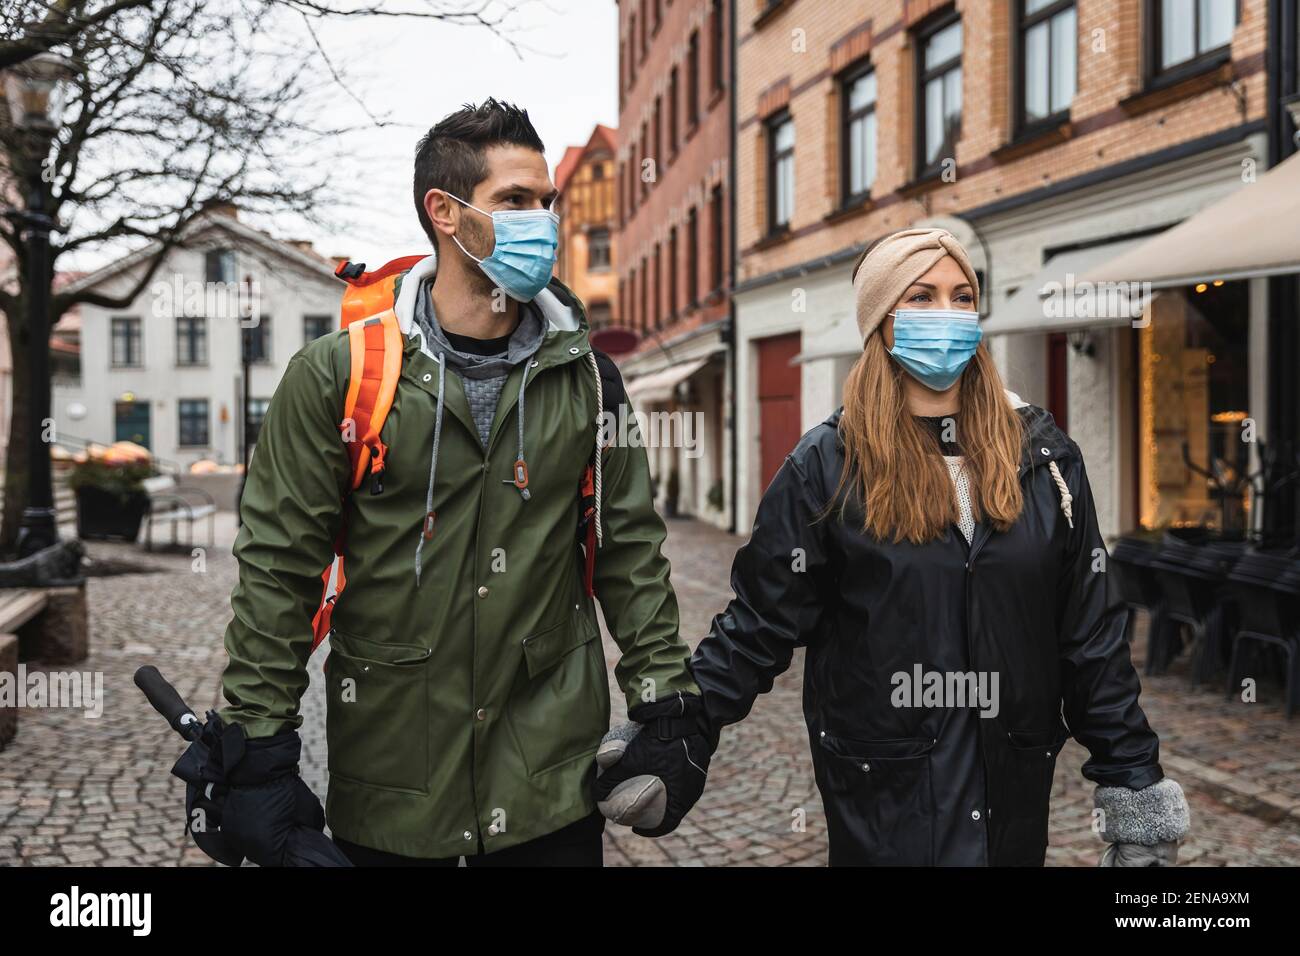 Touristes féminins et masculins explorant la ville pendant une pandémie Banque D'Images